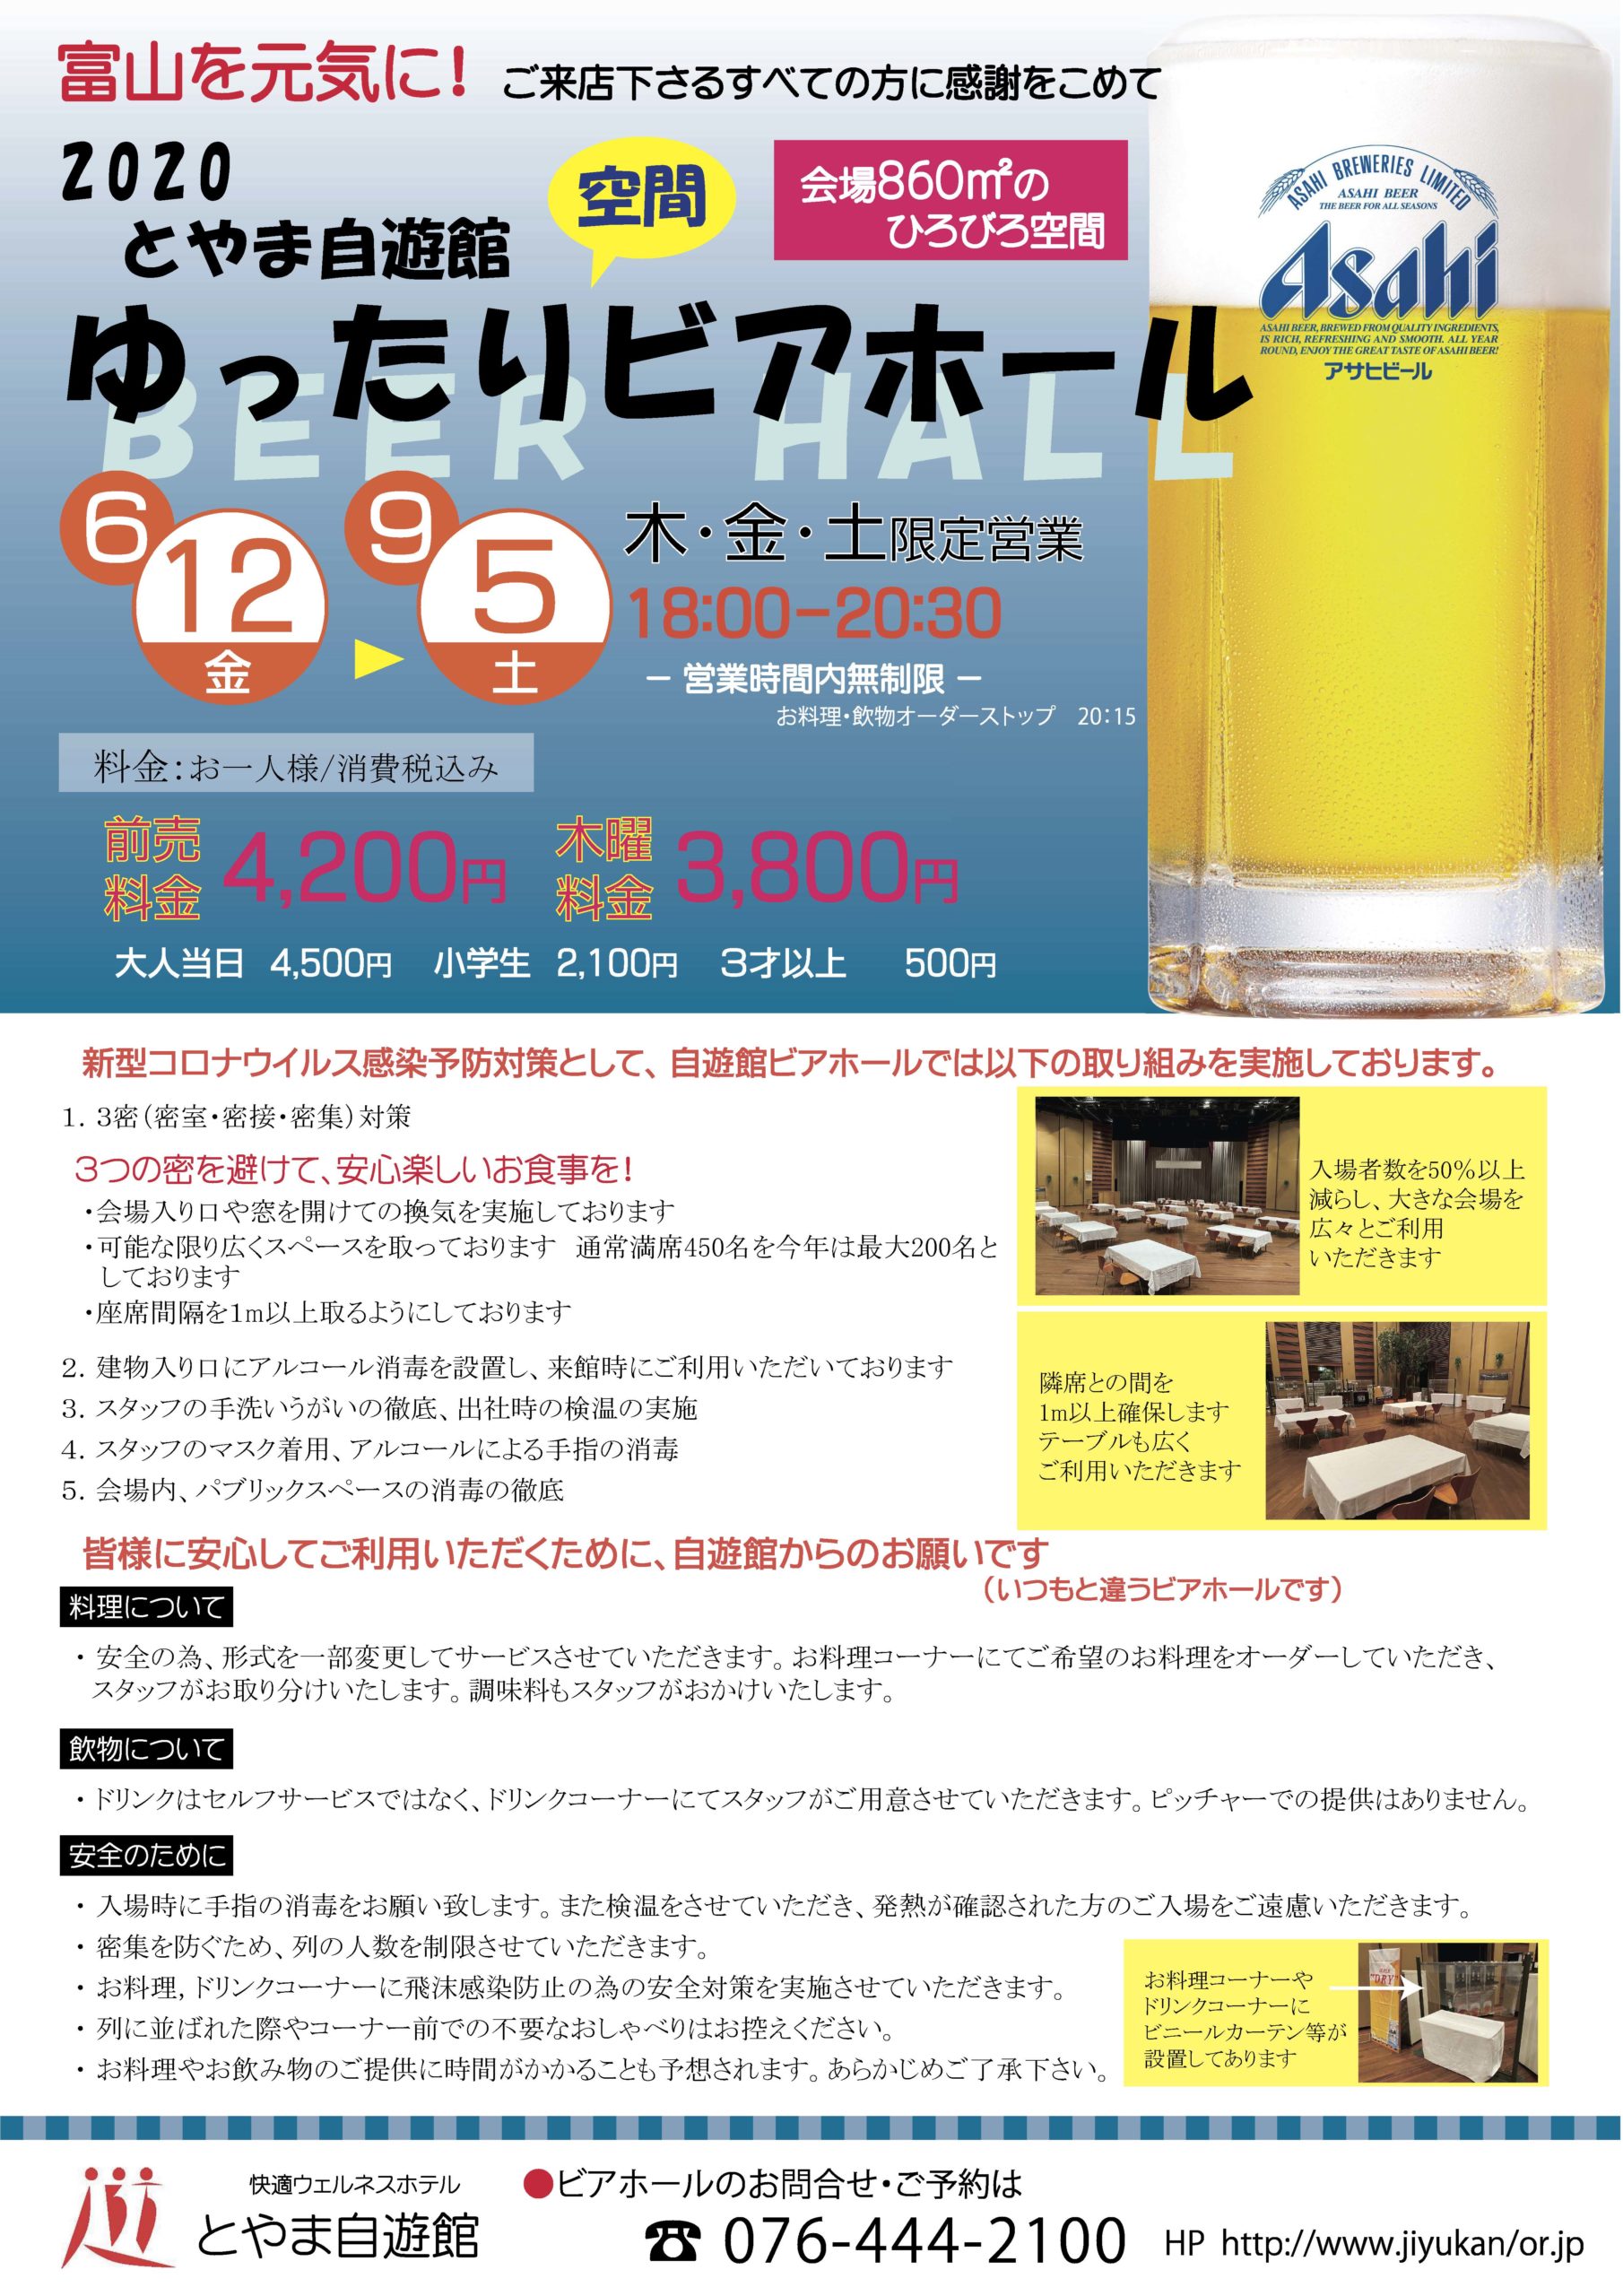 ビールの美味しい季節が到来 富山のビアガーデン ビアフェス Toy Life